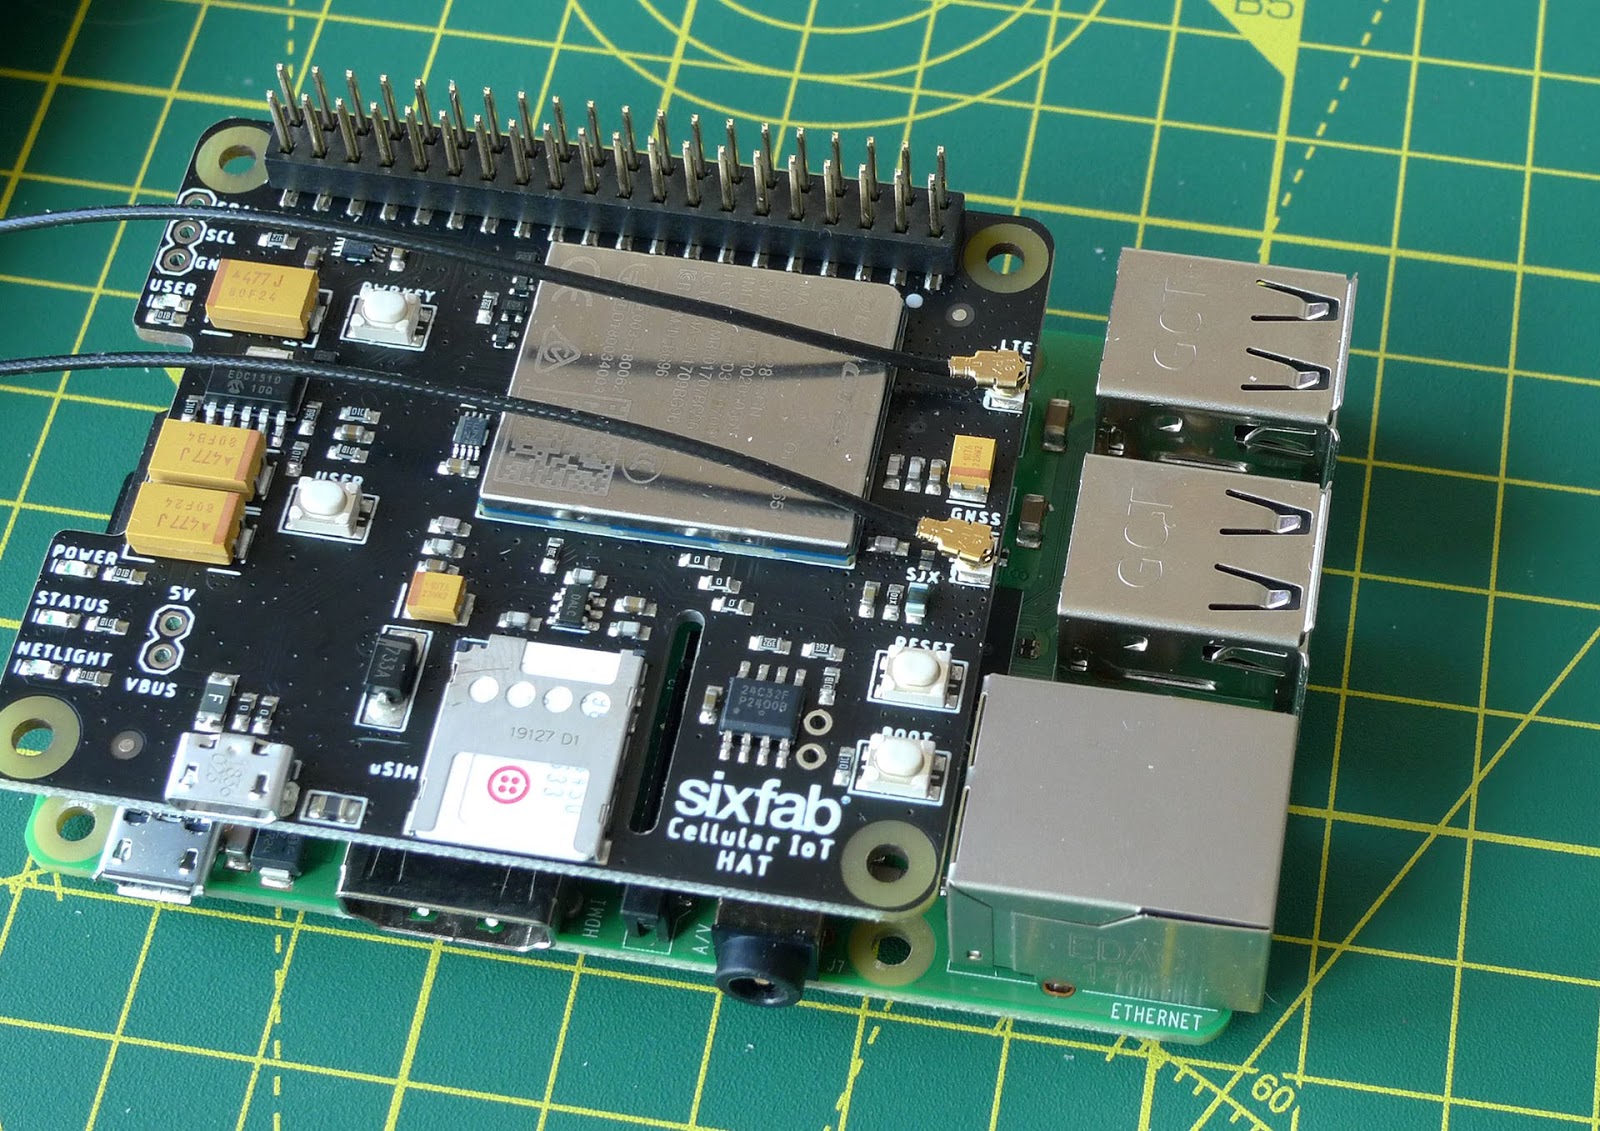 A SixFab Cellular IoT Hat for Raspberry Pi, with a Twilio Super SIM